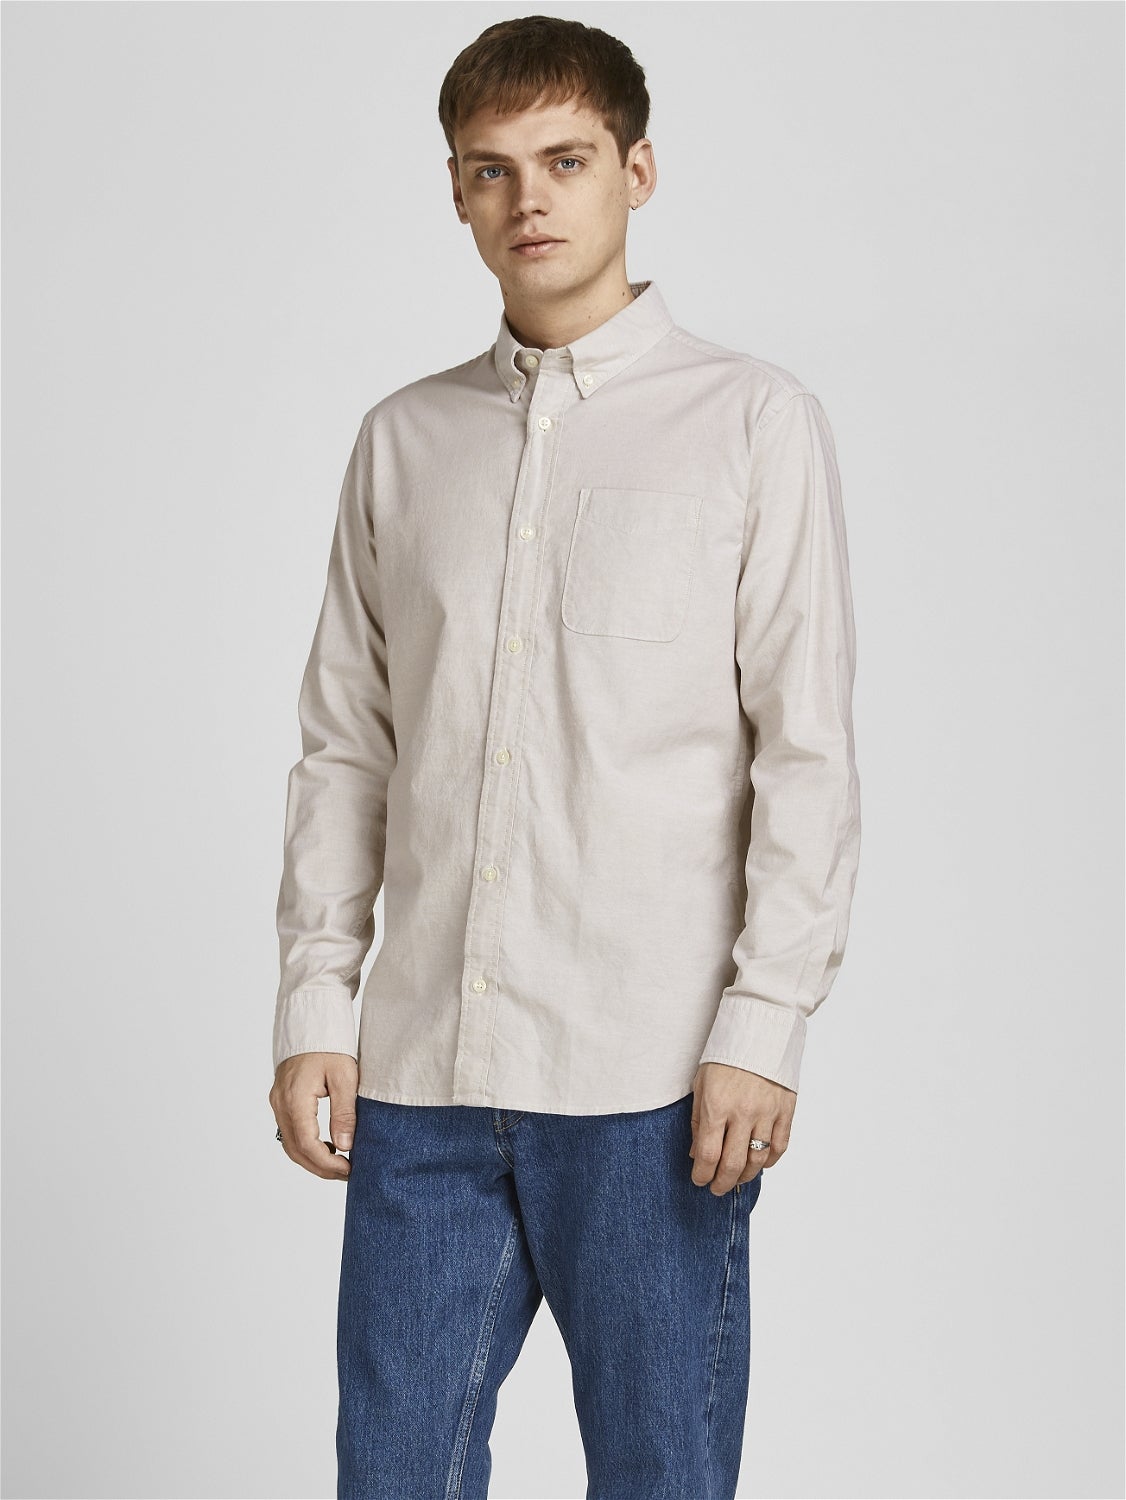 MODA UOMO Camicie & T-shirt Casual Bianco XL sconto 50% Jack & Jones Camicia 